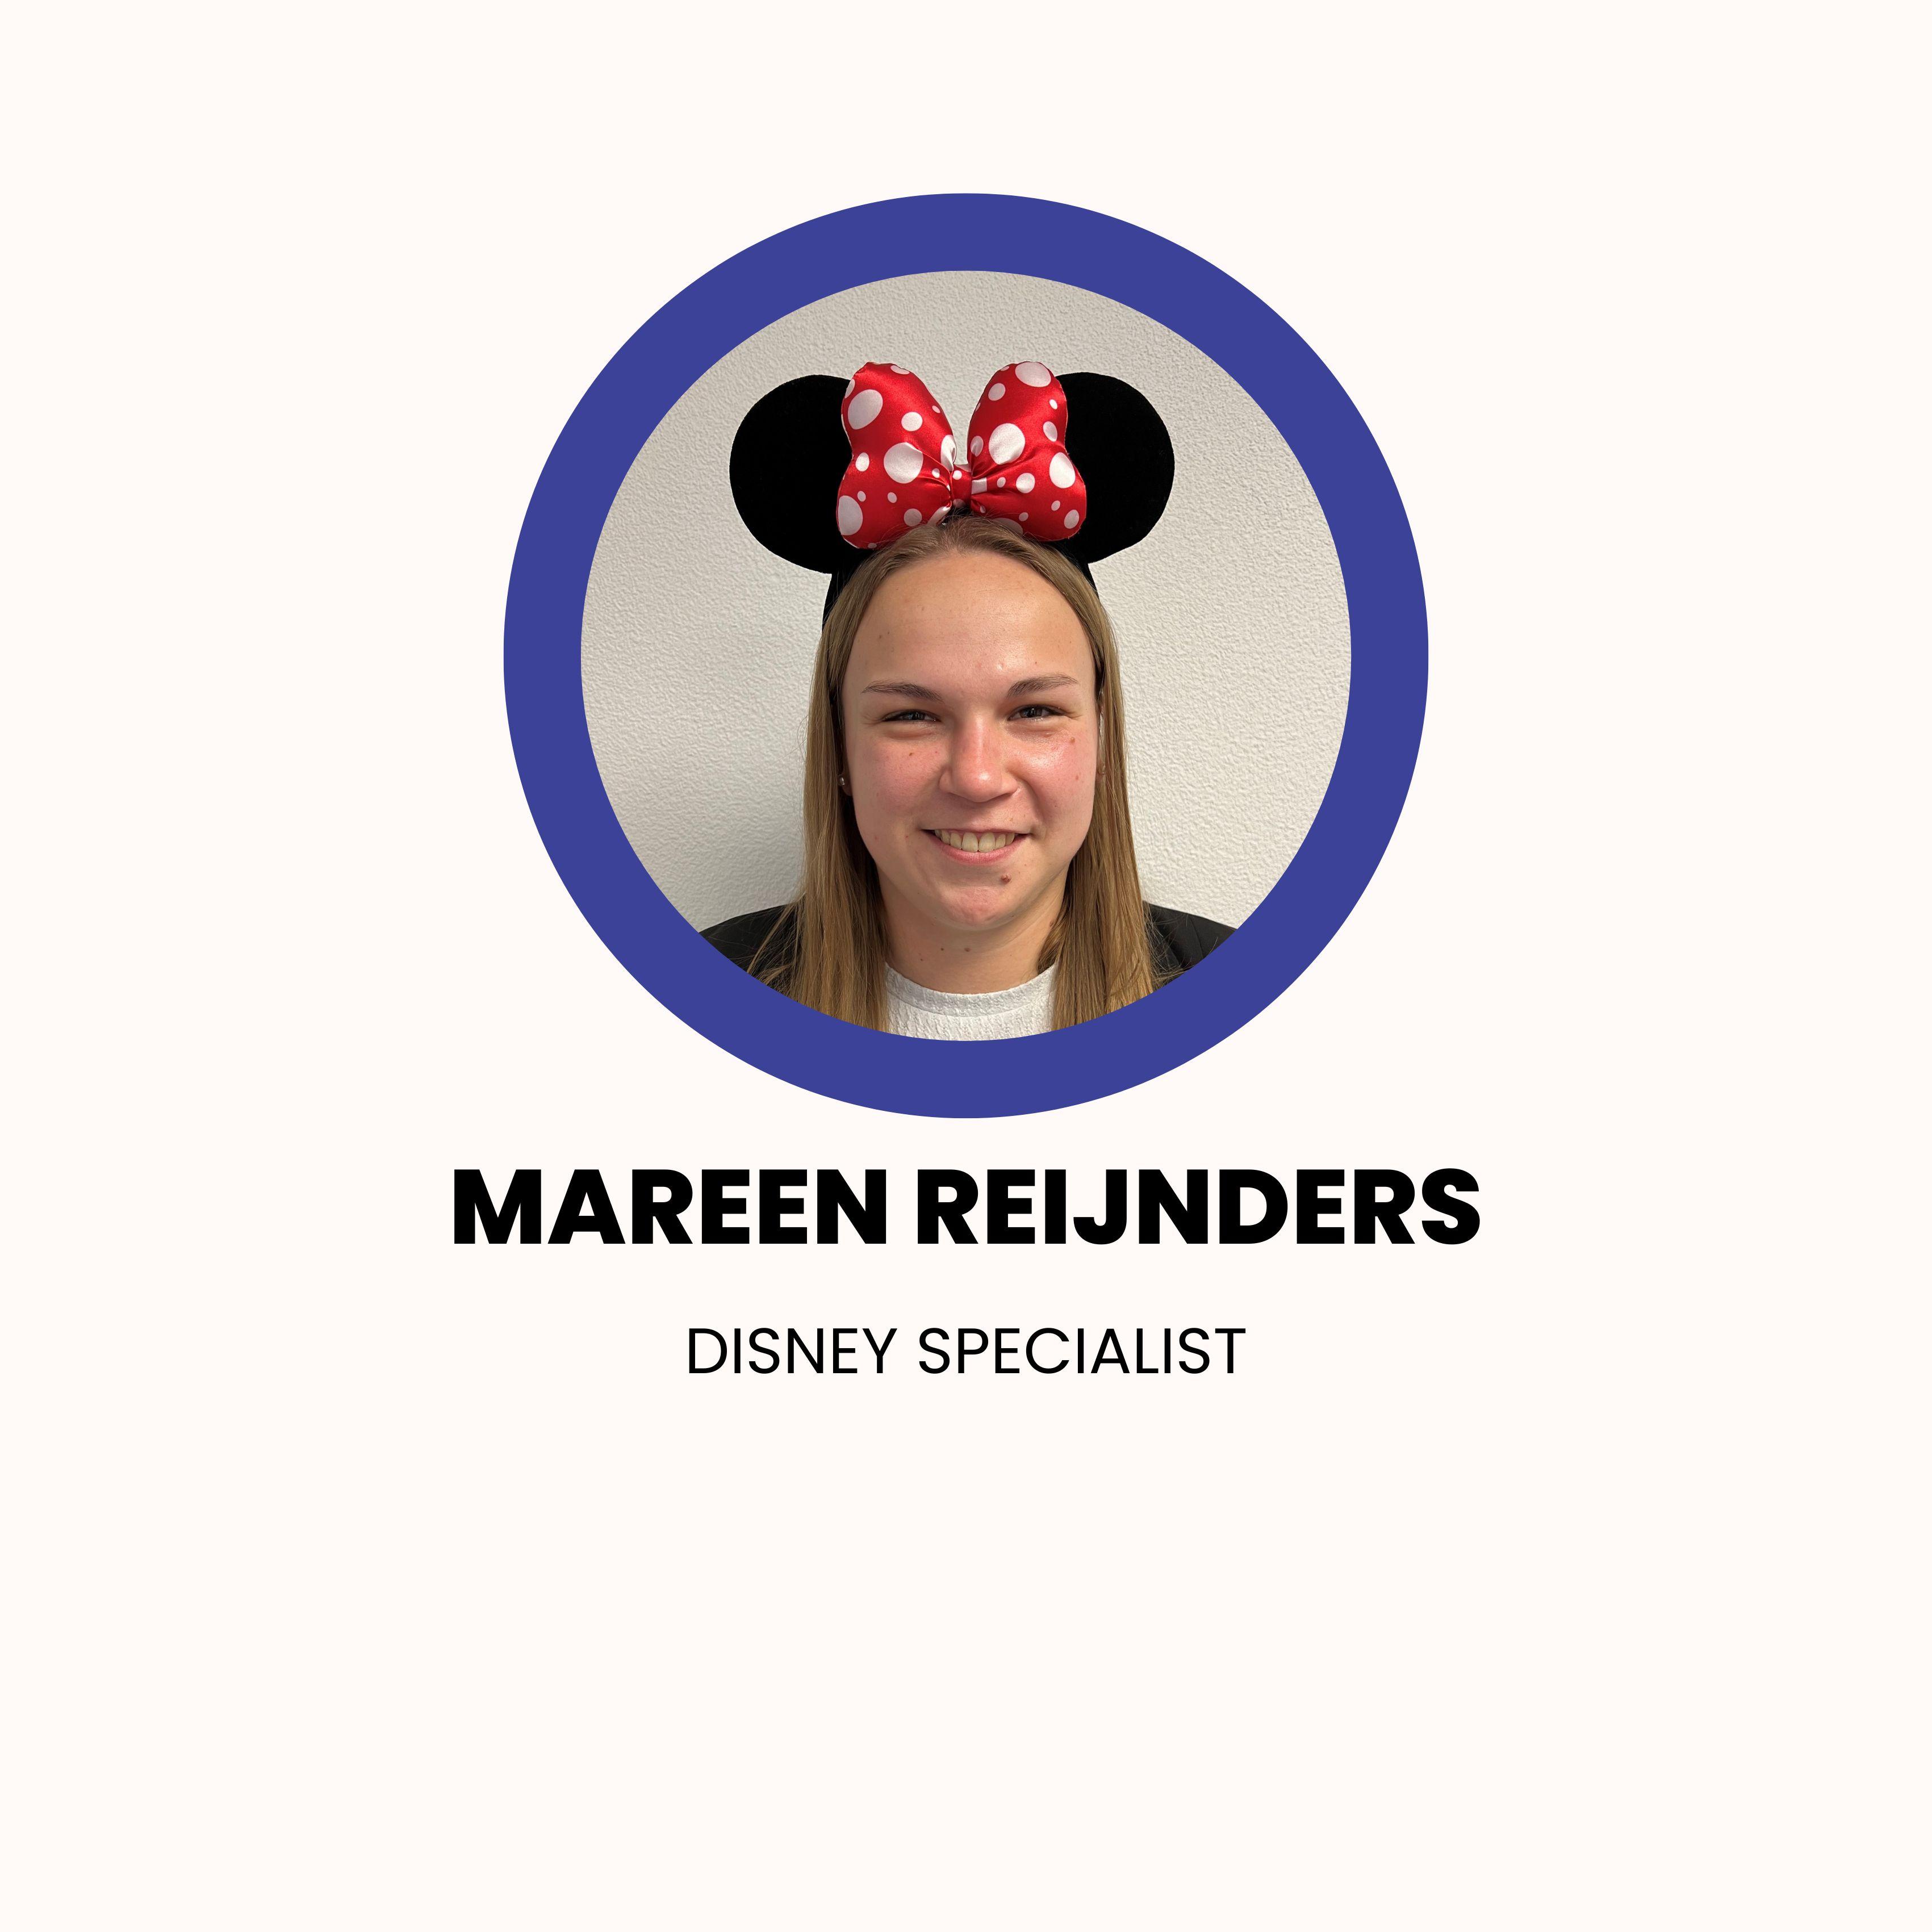 Disney Specialist Mareen